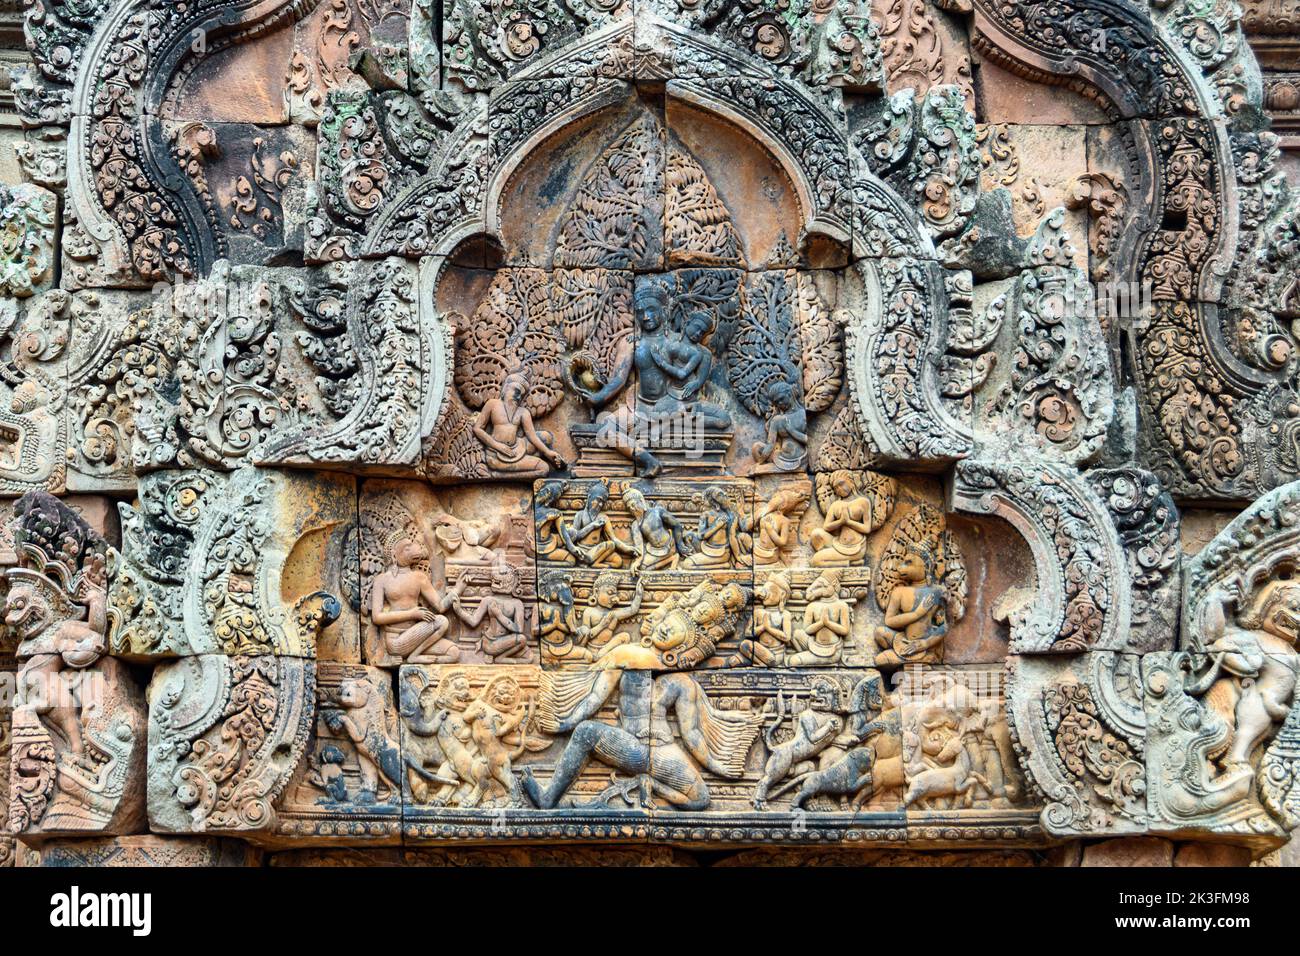 Camboya. Siem Riep. El parque arqueológico de Angkor. Templo Banteay Srei. Detalle de bajorrelieve en el frontón de la entrada al templo Foto de stock